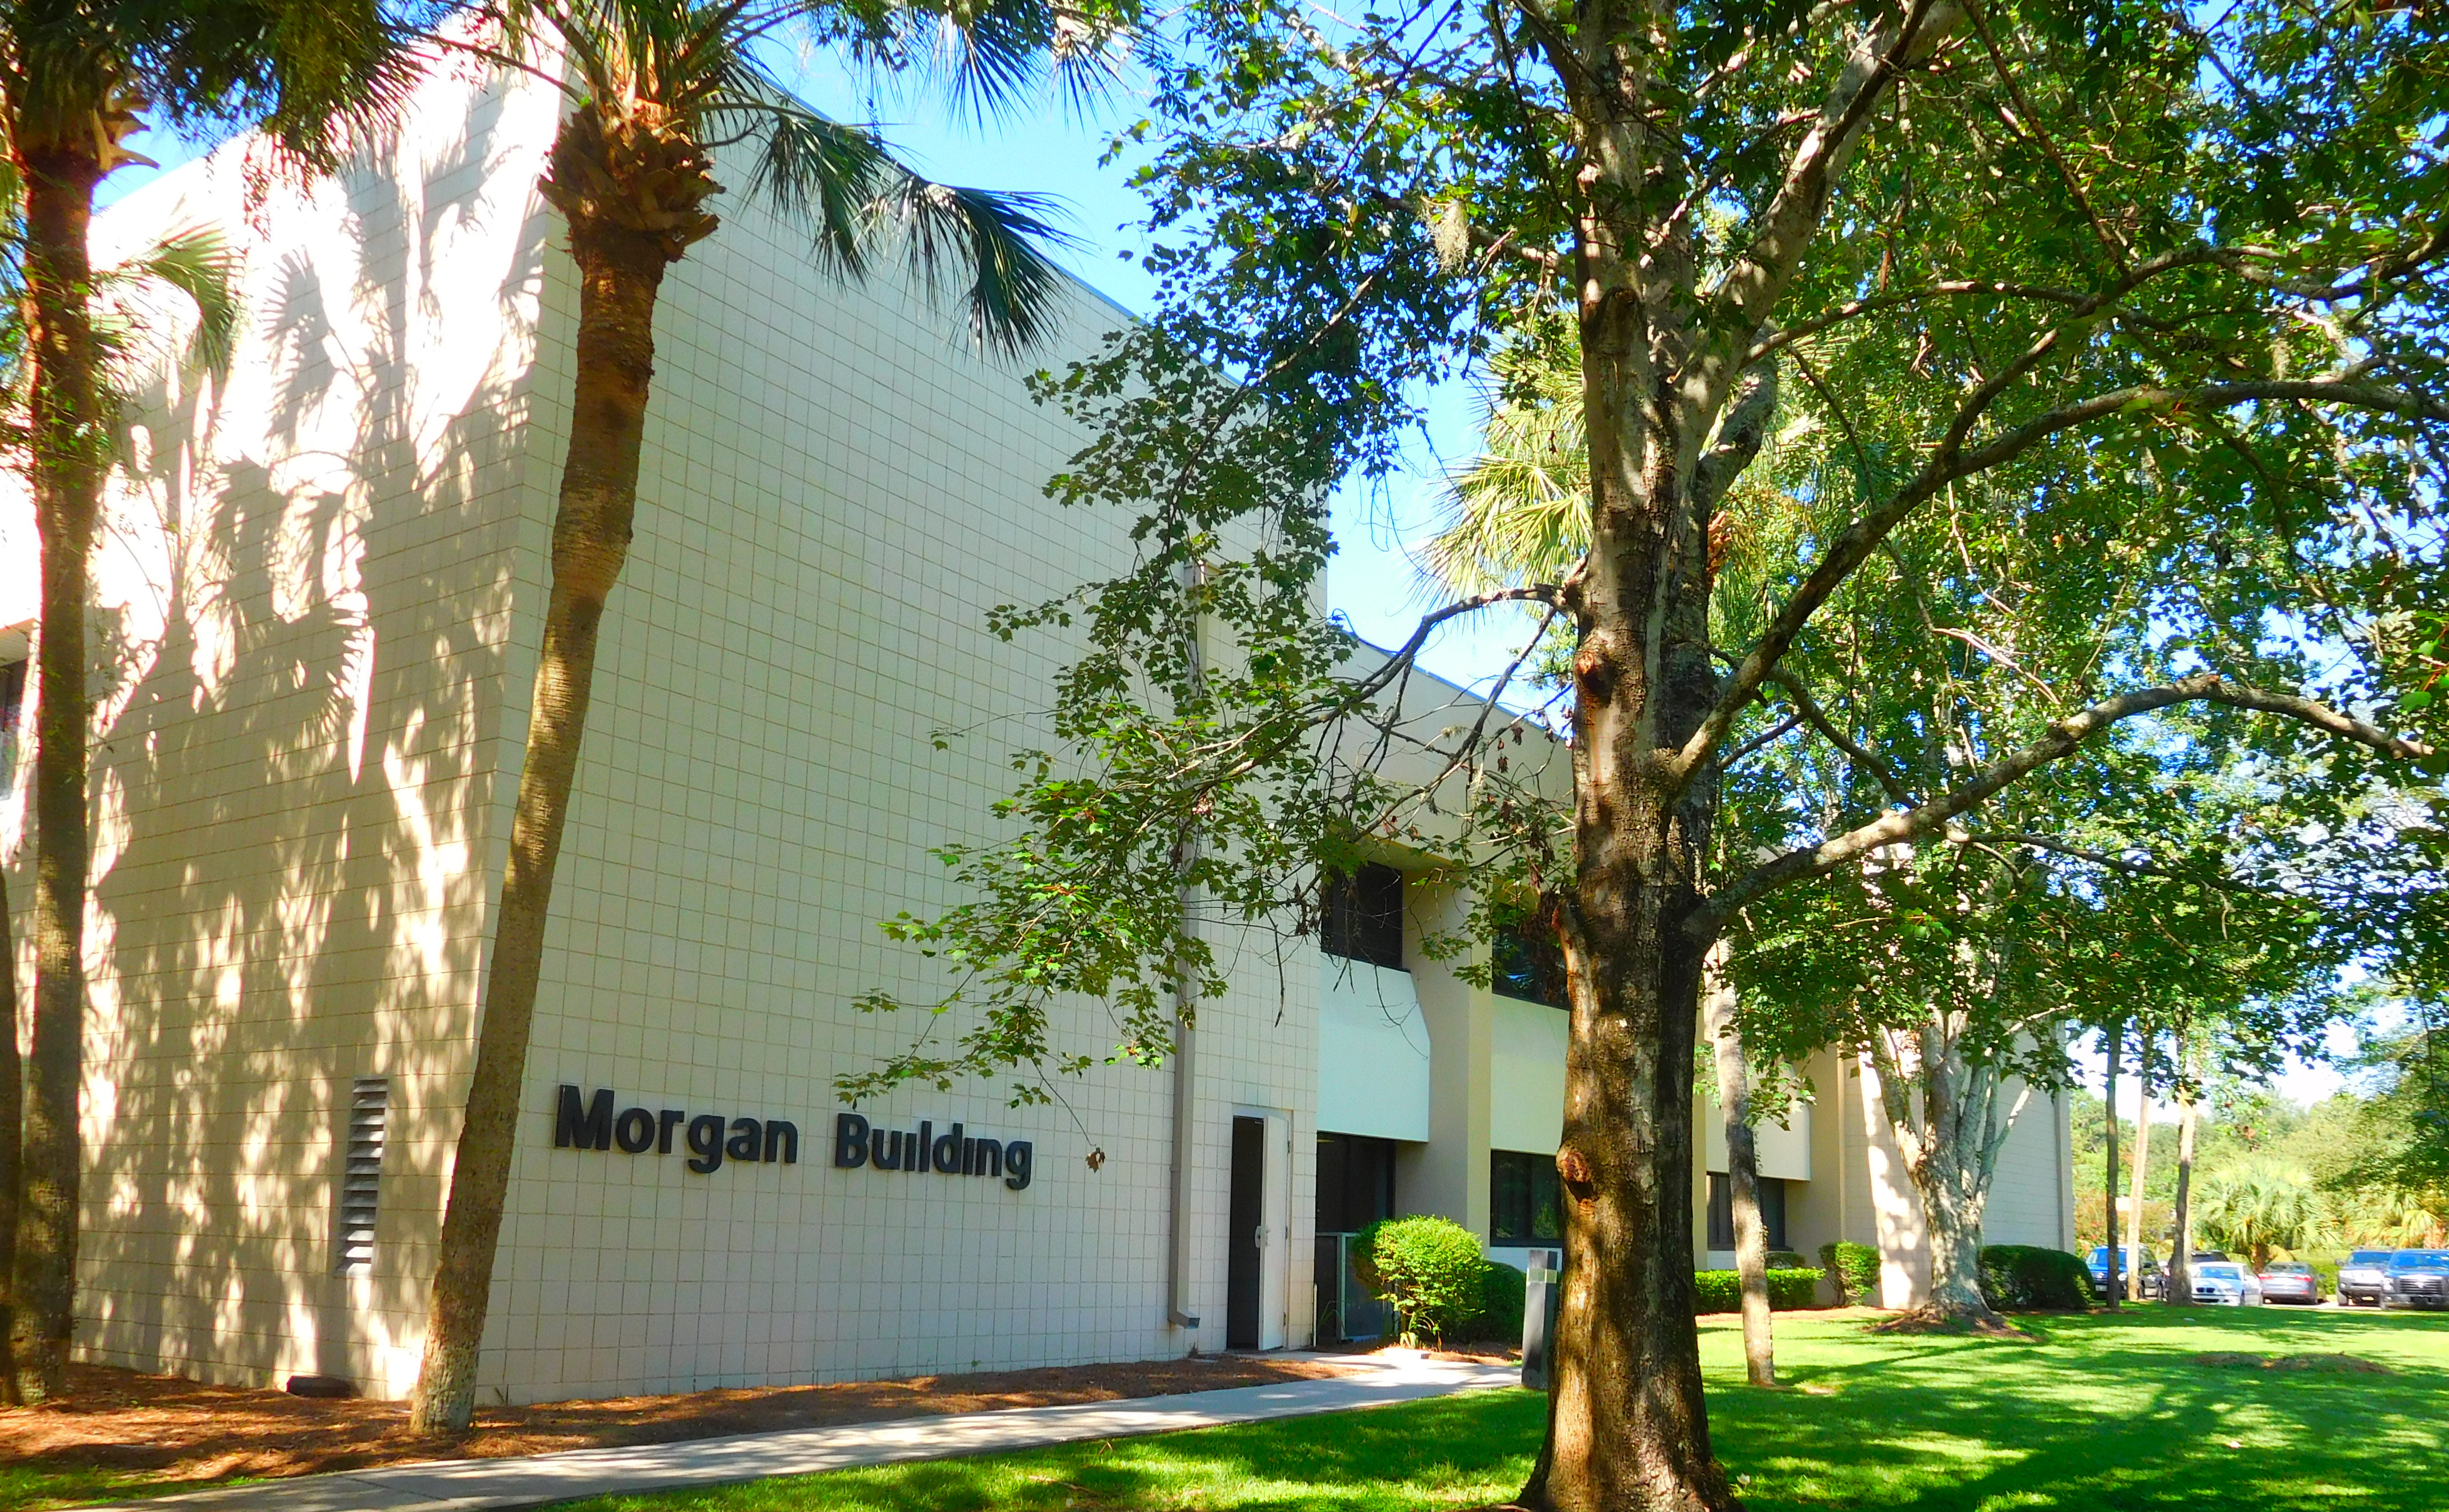 Morgan Building in Innovation Park